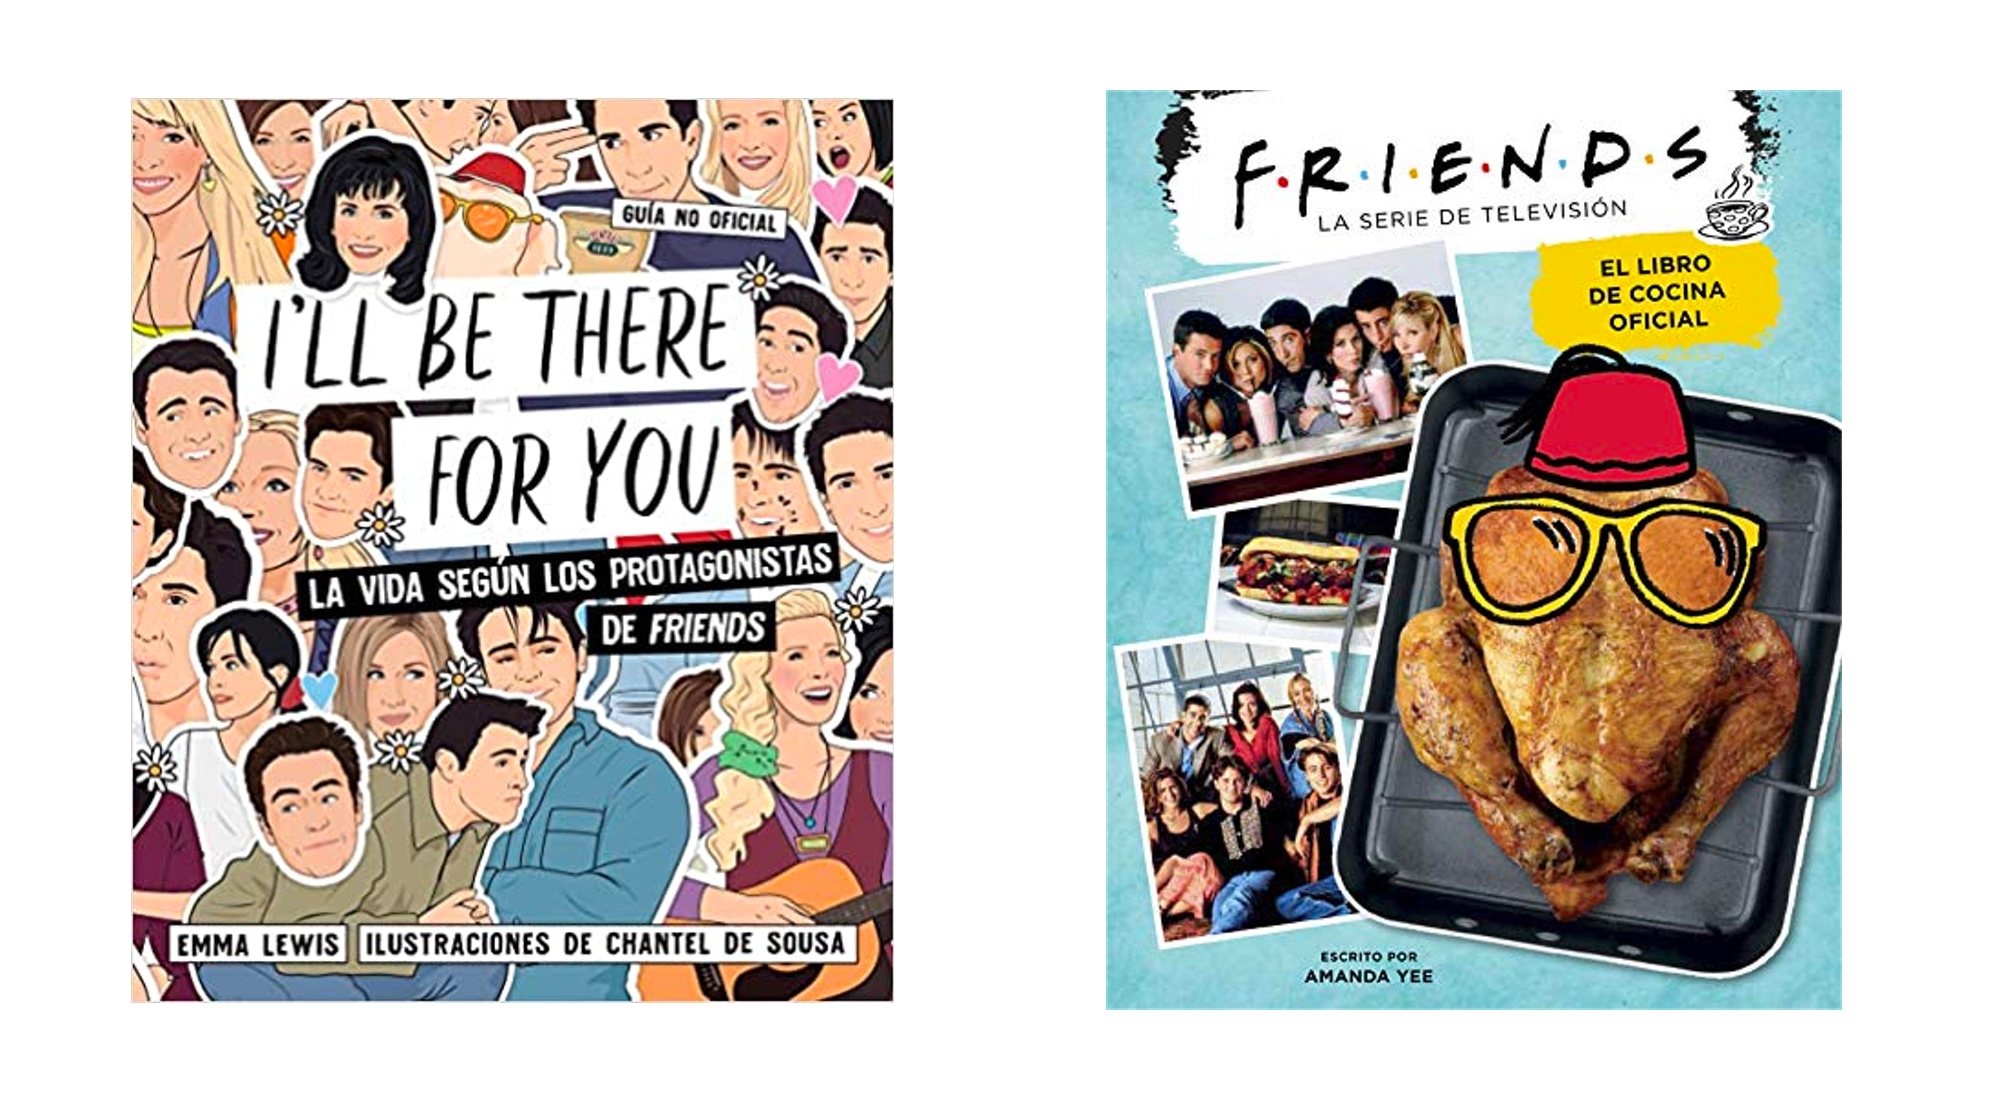 "I'll Be There For You: La vida según los protagonistas de Friends" y "Friends: El libro de cocina oficial"